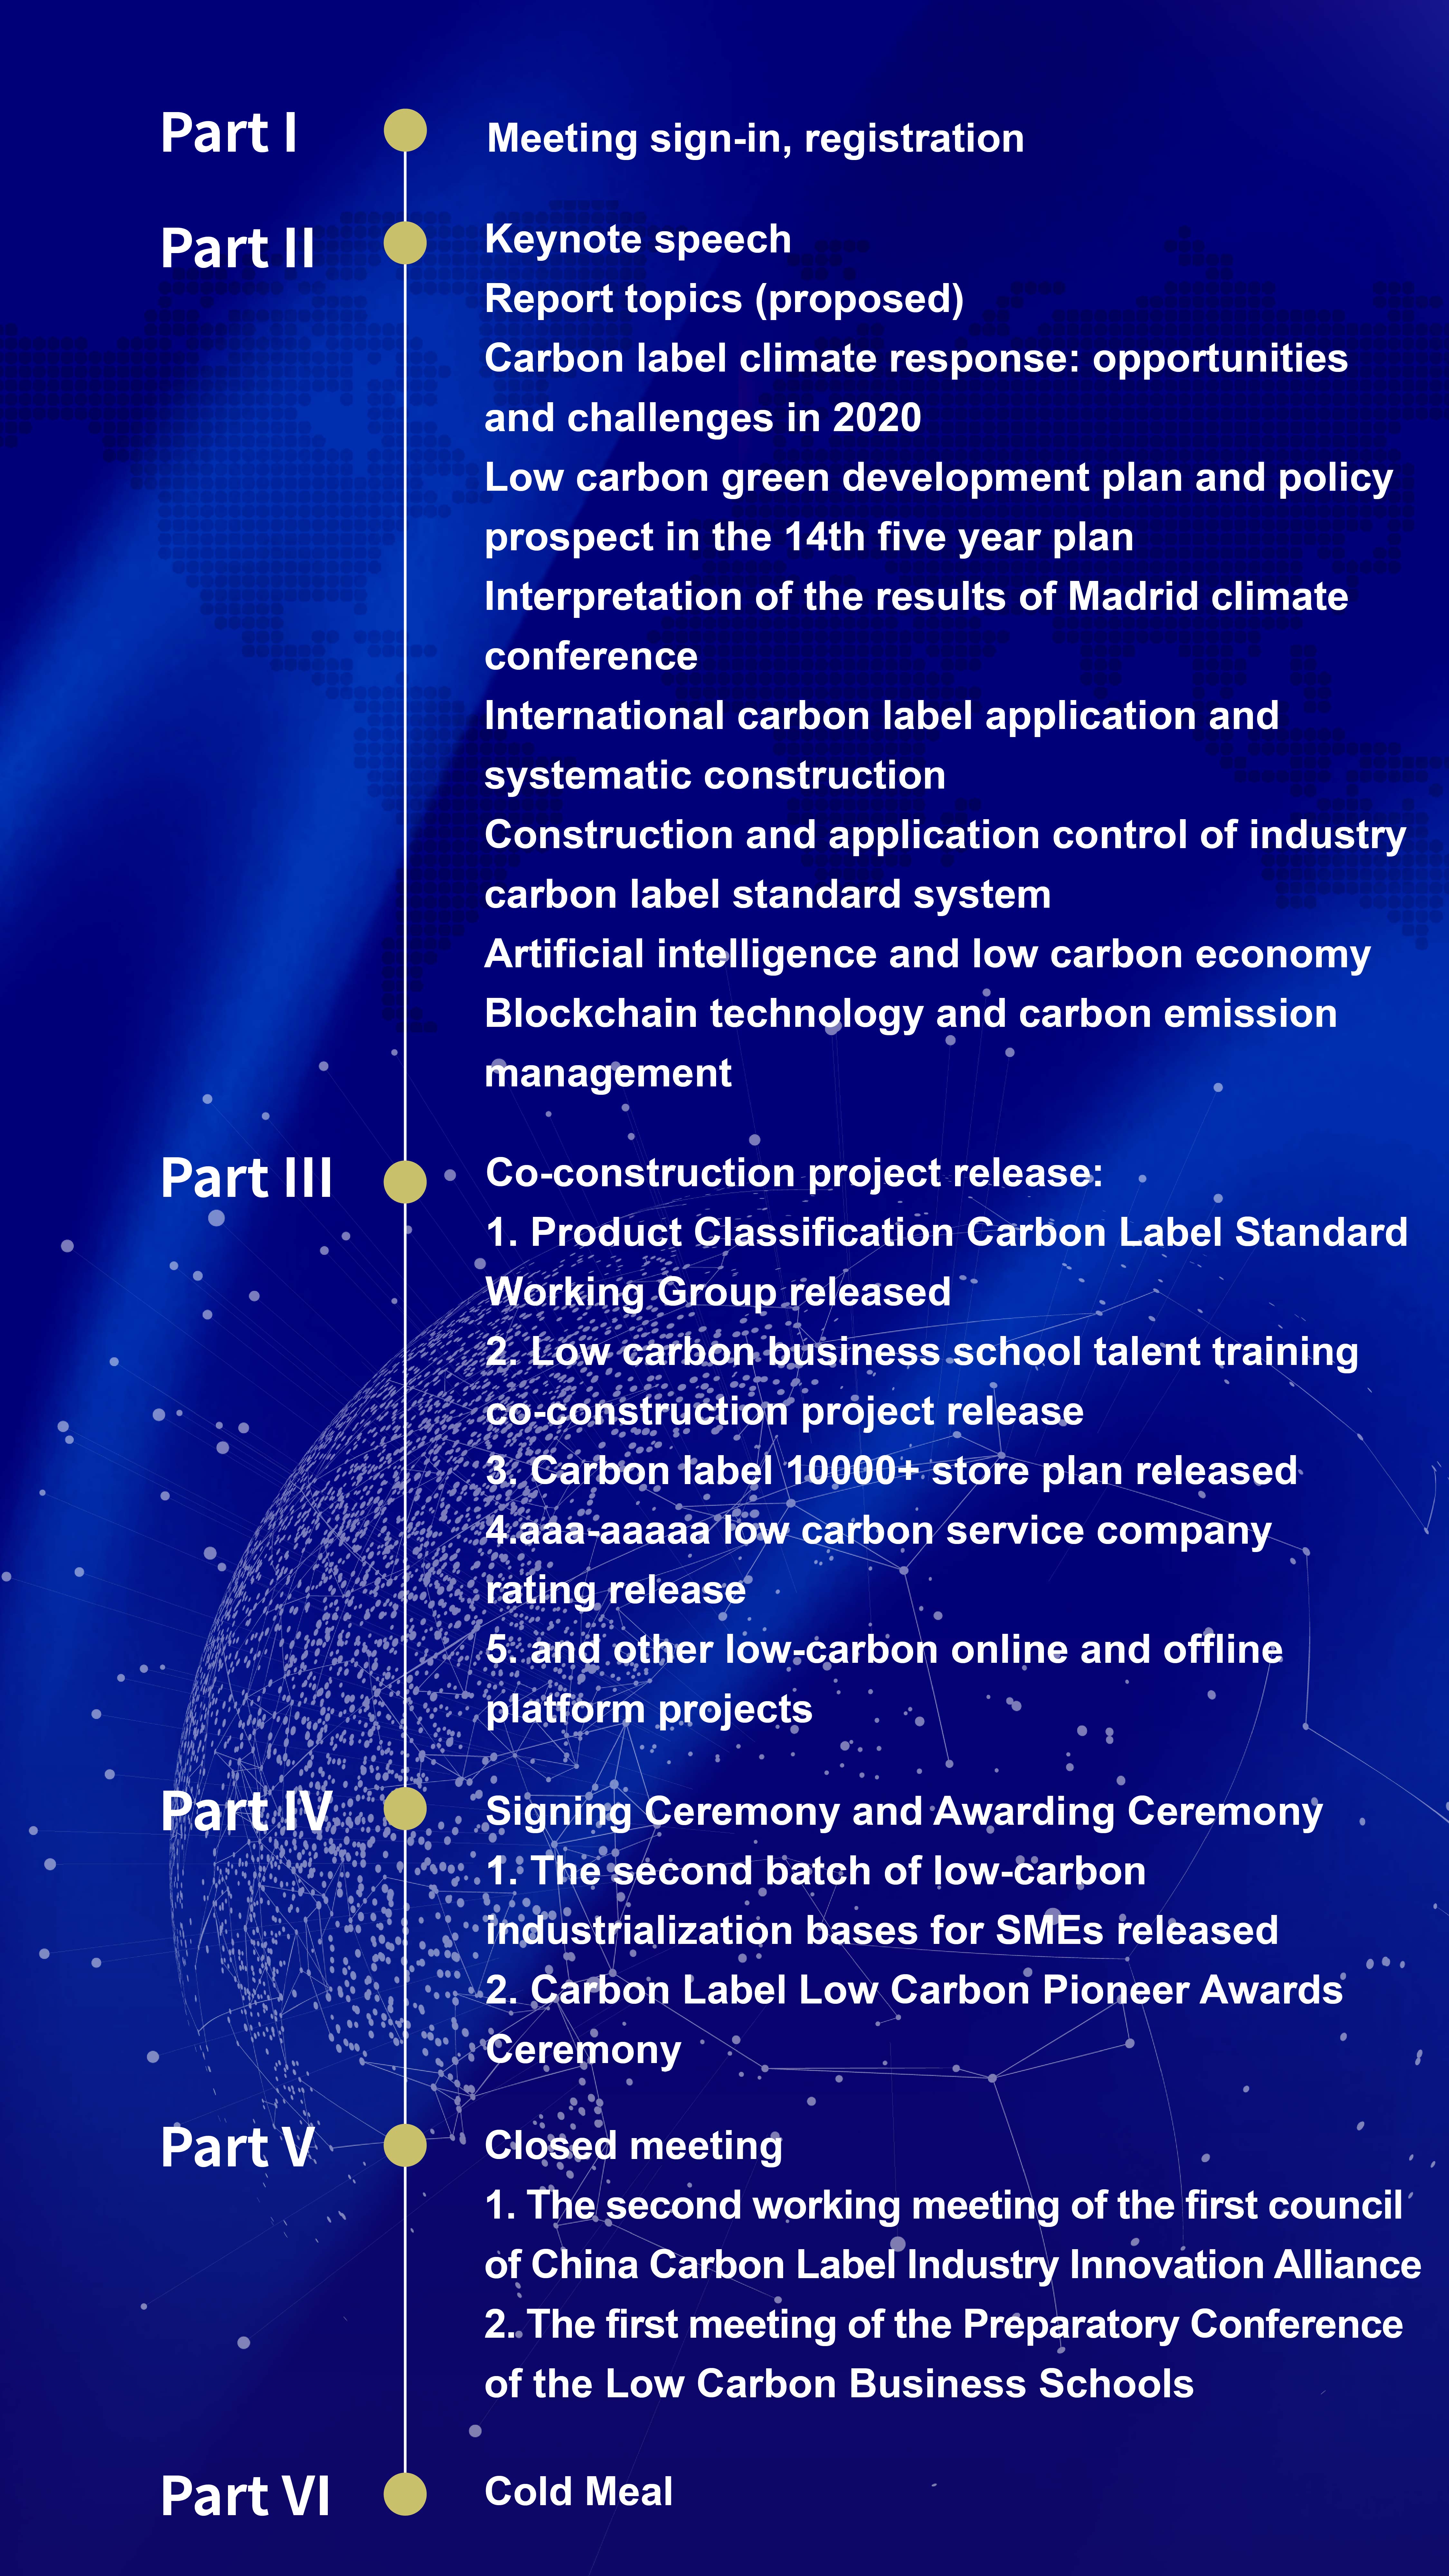 2020碳标签年会暨颁授典礼 -低碳经济与可持续发展